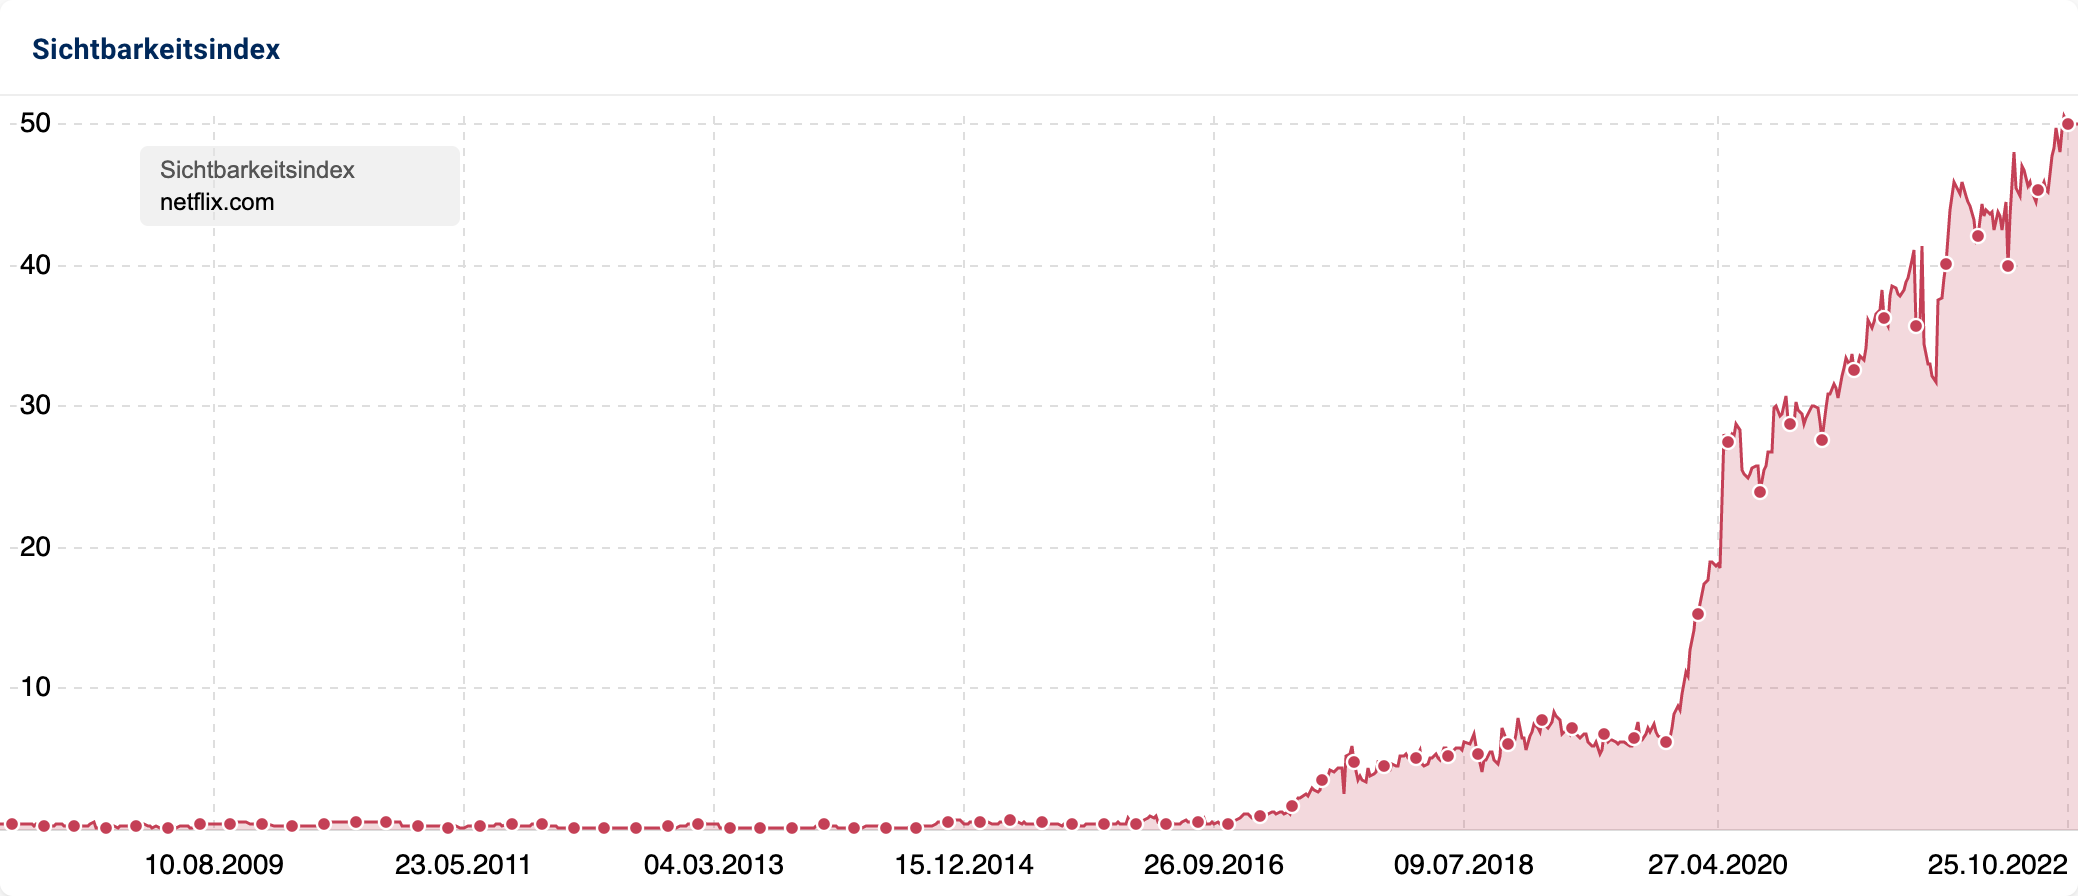 Der Sichtbarkeitsverlauf der Domain netflix.com zeigt seit 2016 einen starken Aufwärtstrend von etwa 1 auf mittlerweile etwa 50 Sichtbarkeitspunkte.